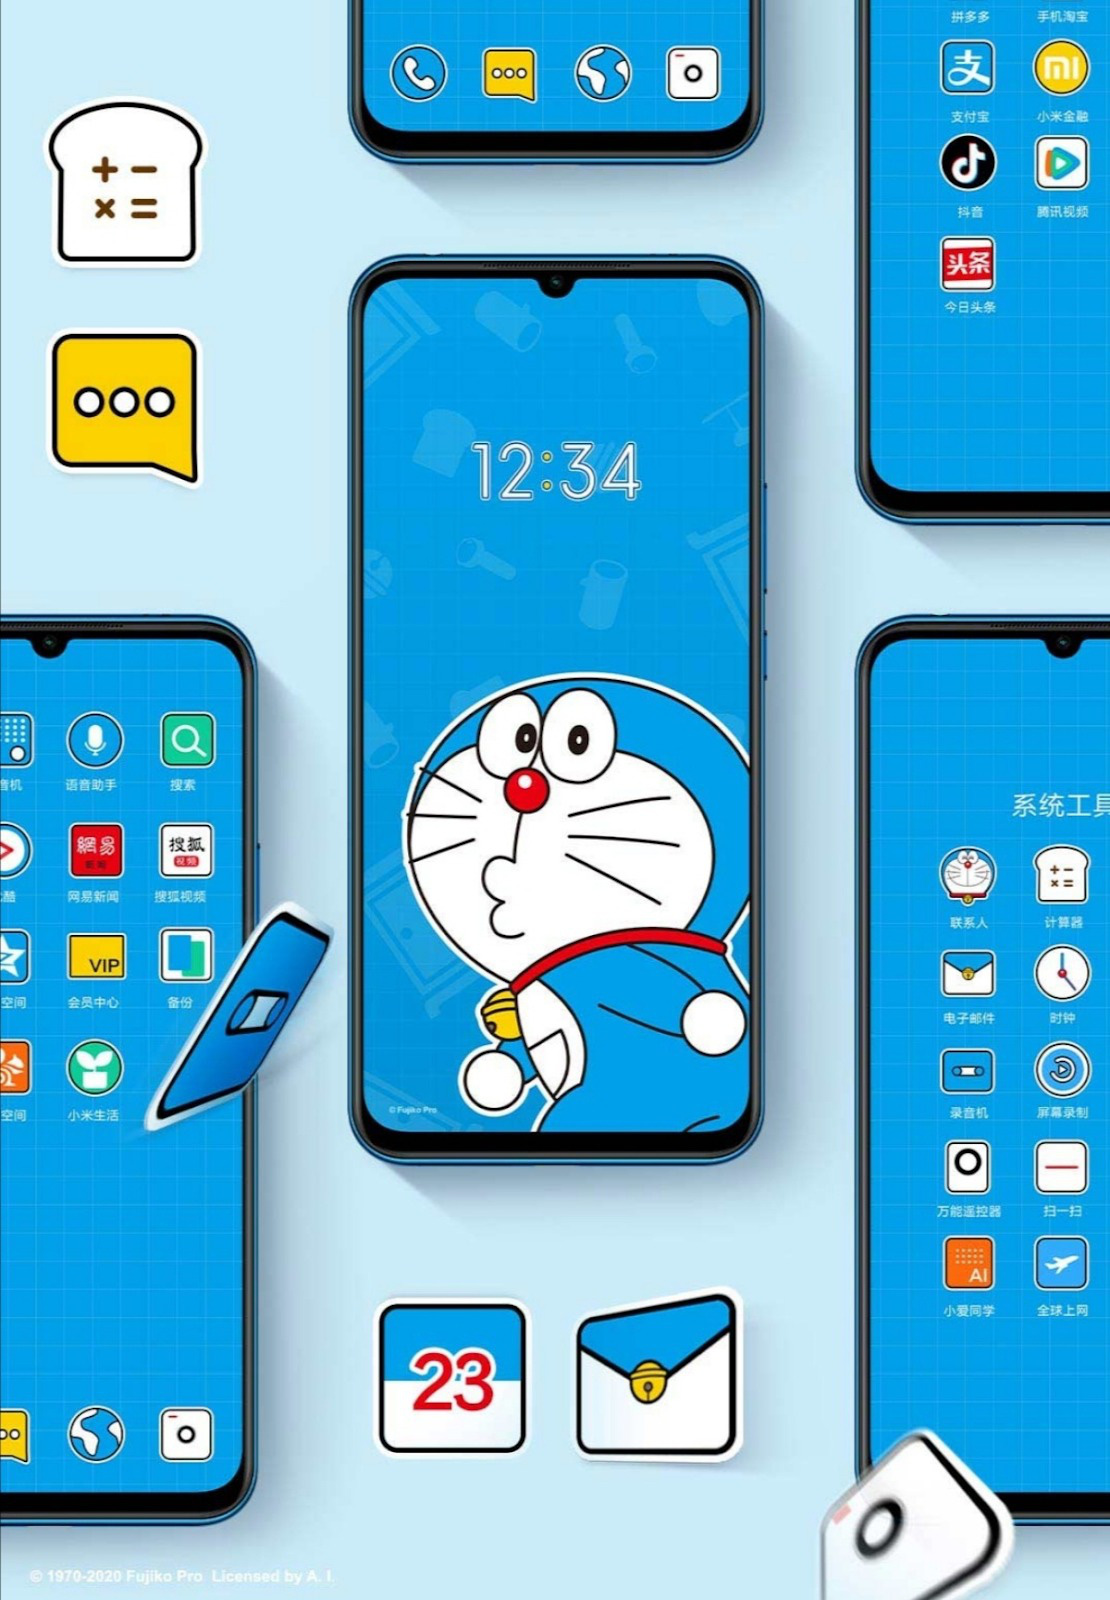 Bạn yêu thích Doraemon và muốn có một chiếc điện thoại độc đáo? Hãy xem ngay những mẫu điện thoại mèo ú Doraemon mà chúng tôi đang giới thiệu. Chúng mang đến không chỉ tính năng vượt trội mà còn cả vẻ đẹp đáng yêu và độc đáo.